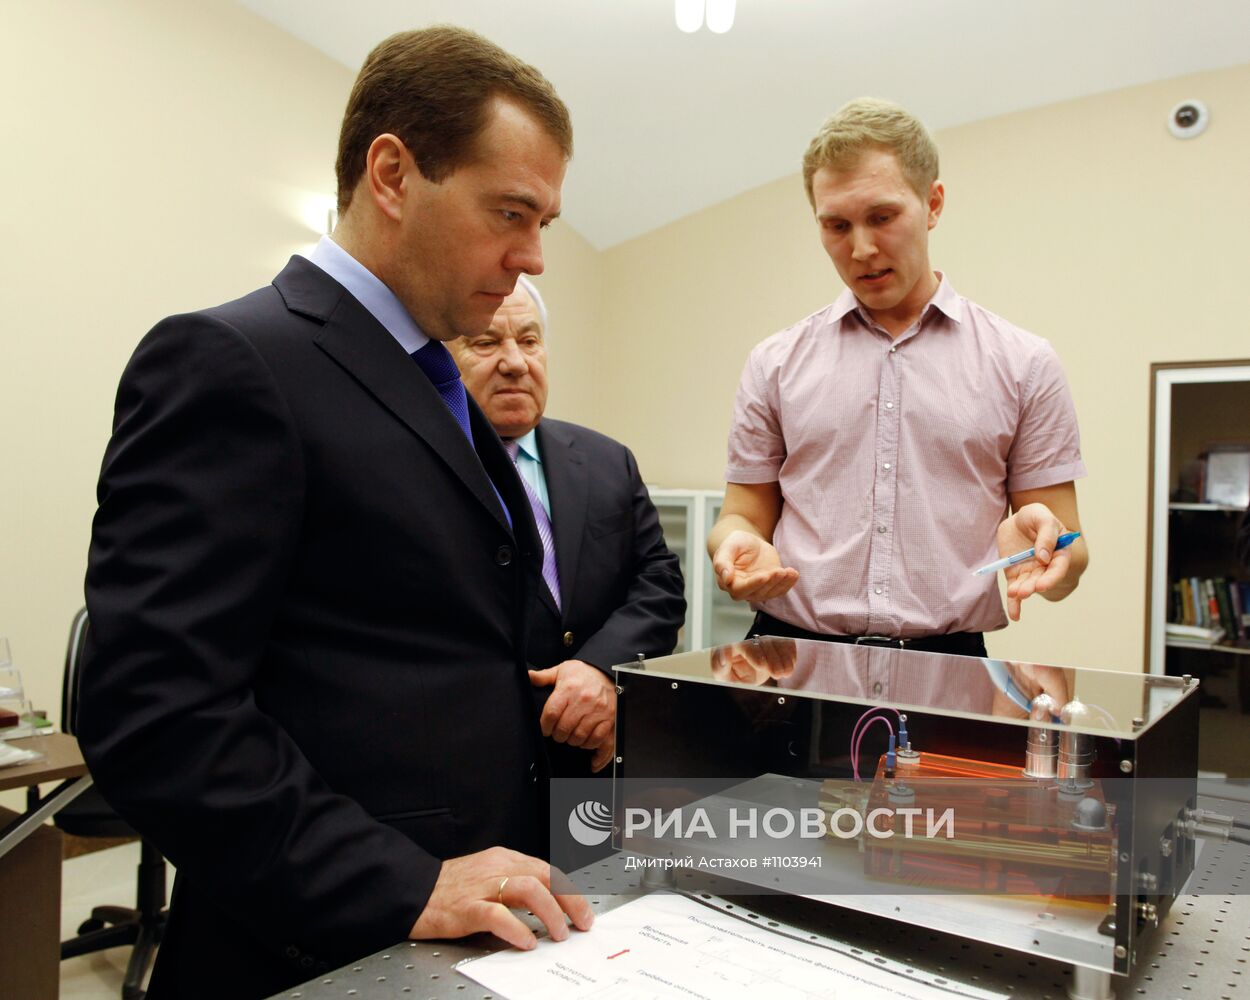 Посещение Д. Медведевым МГТУ имени Н.Э. Баумана